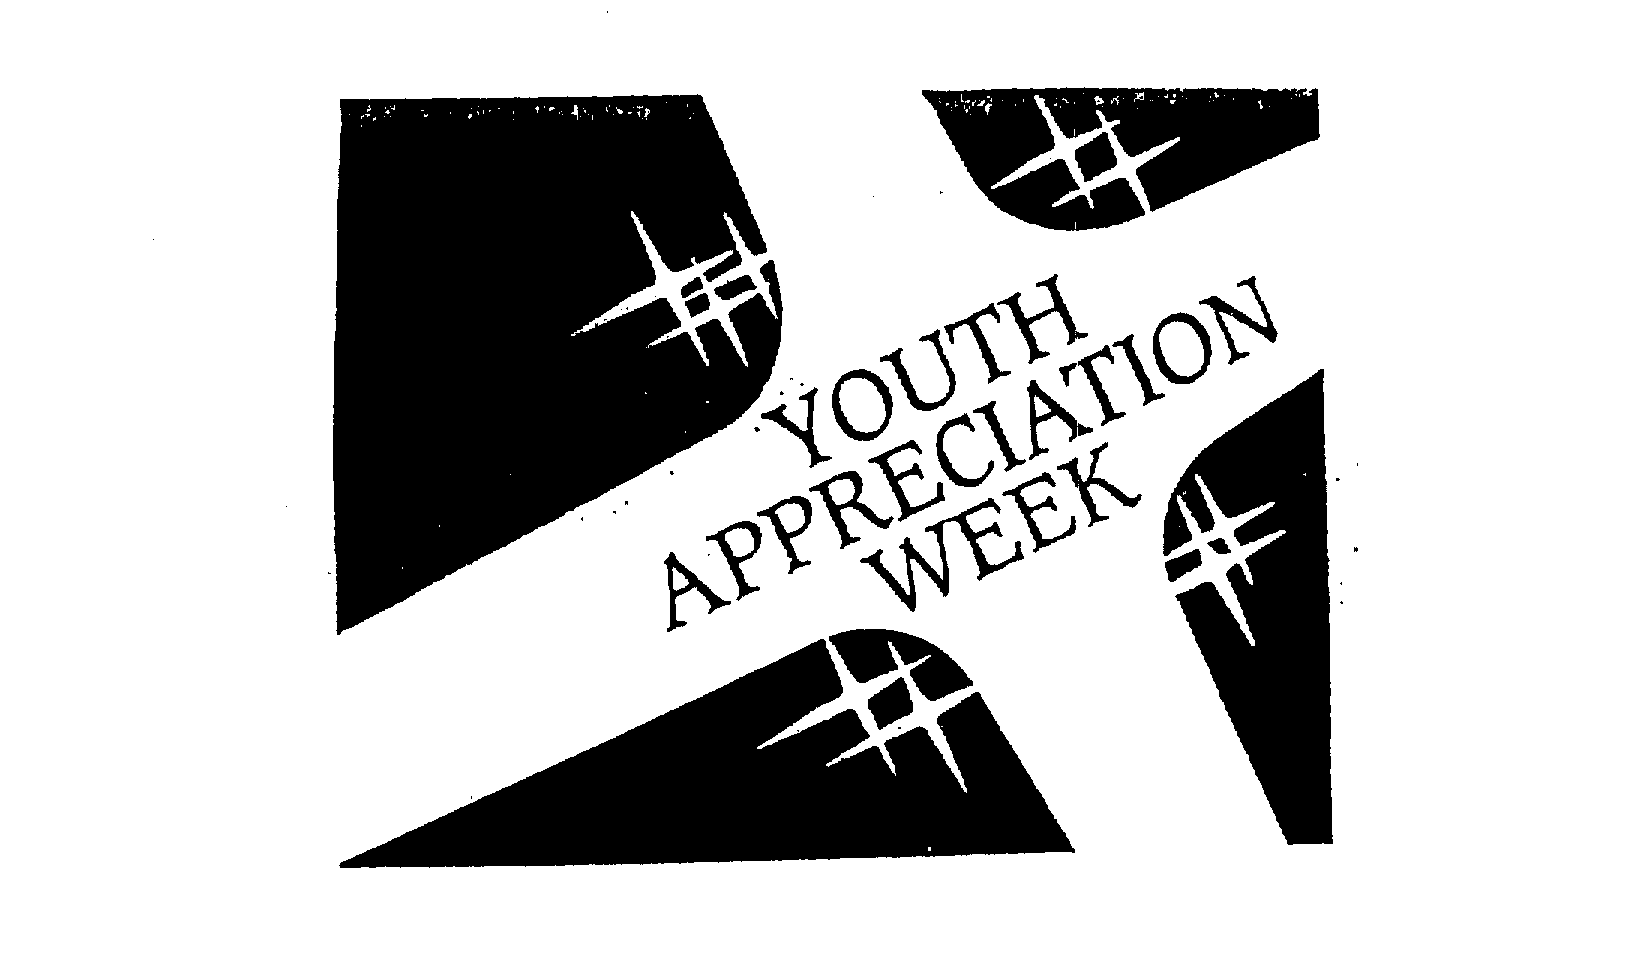  YOUTH APPRECIATION WEEK